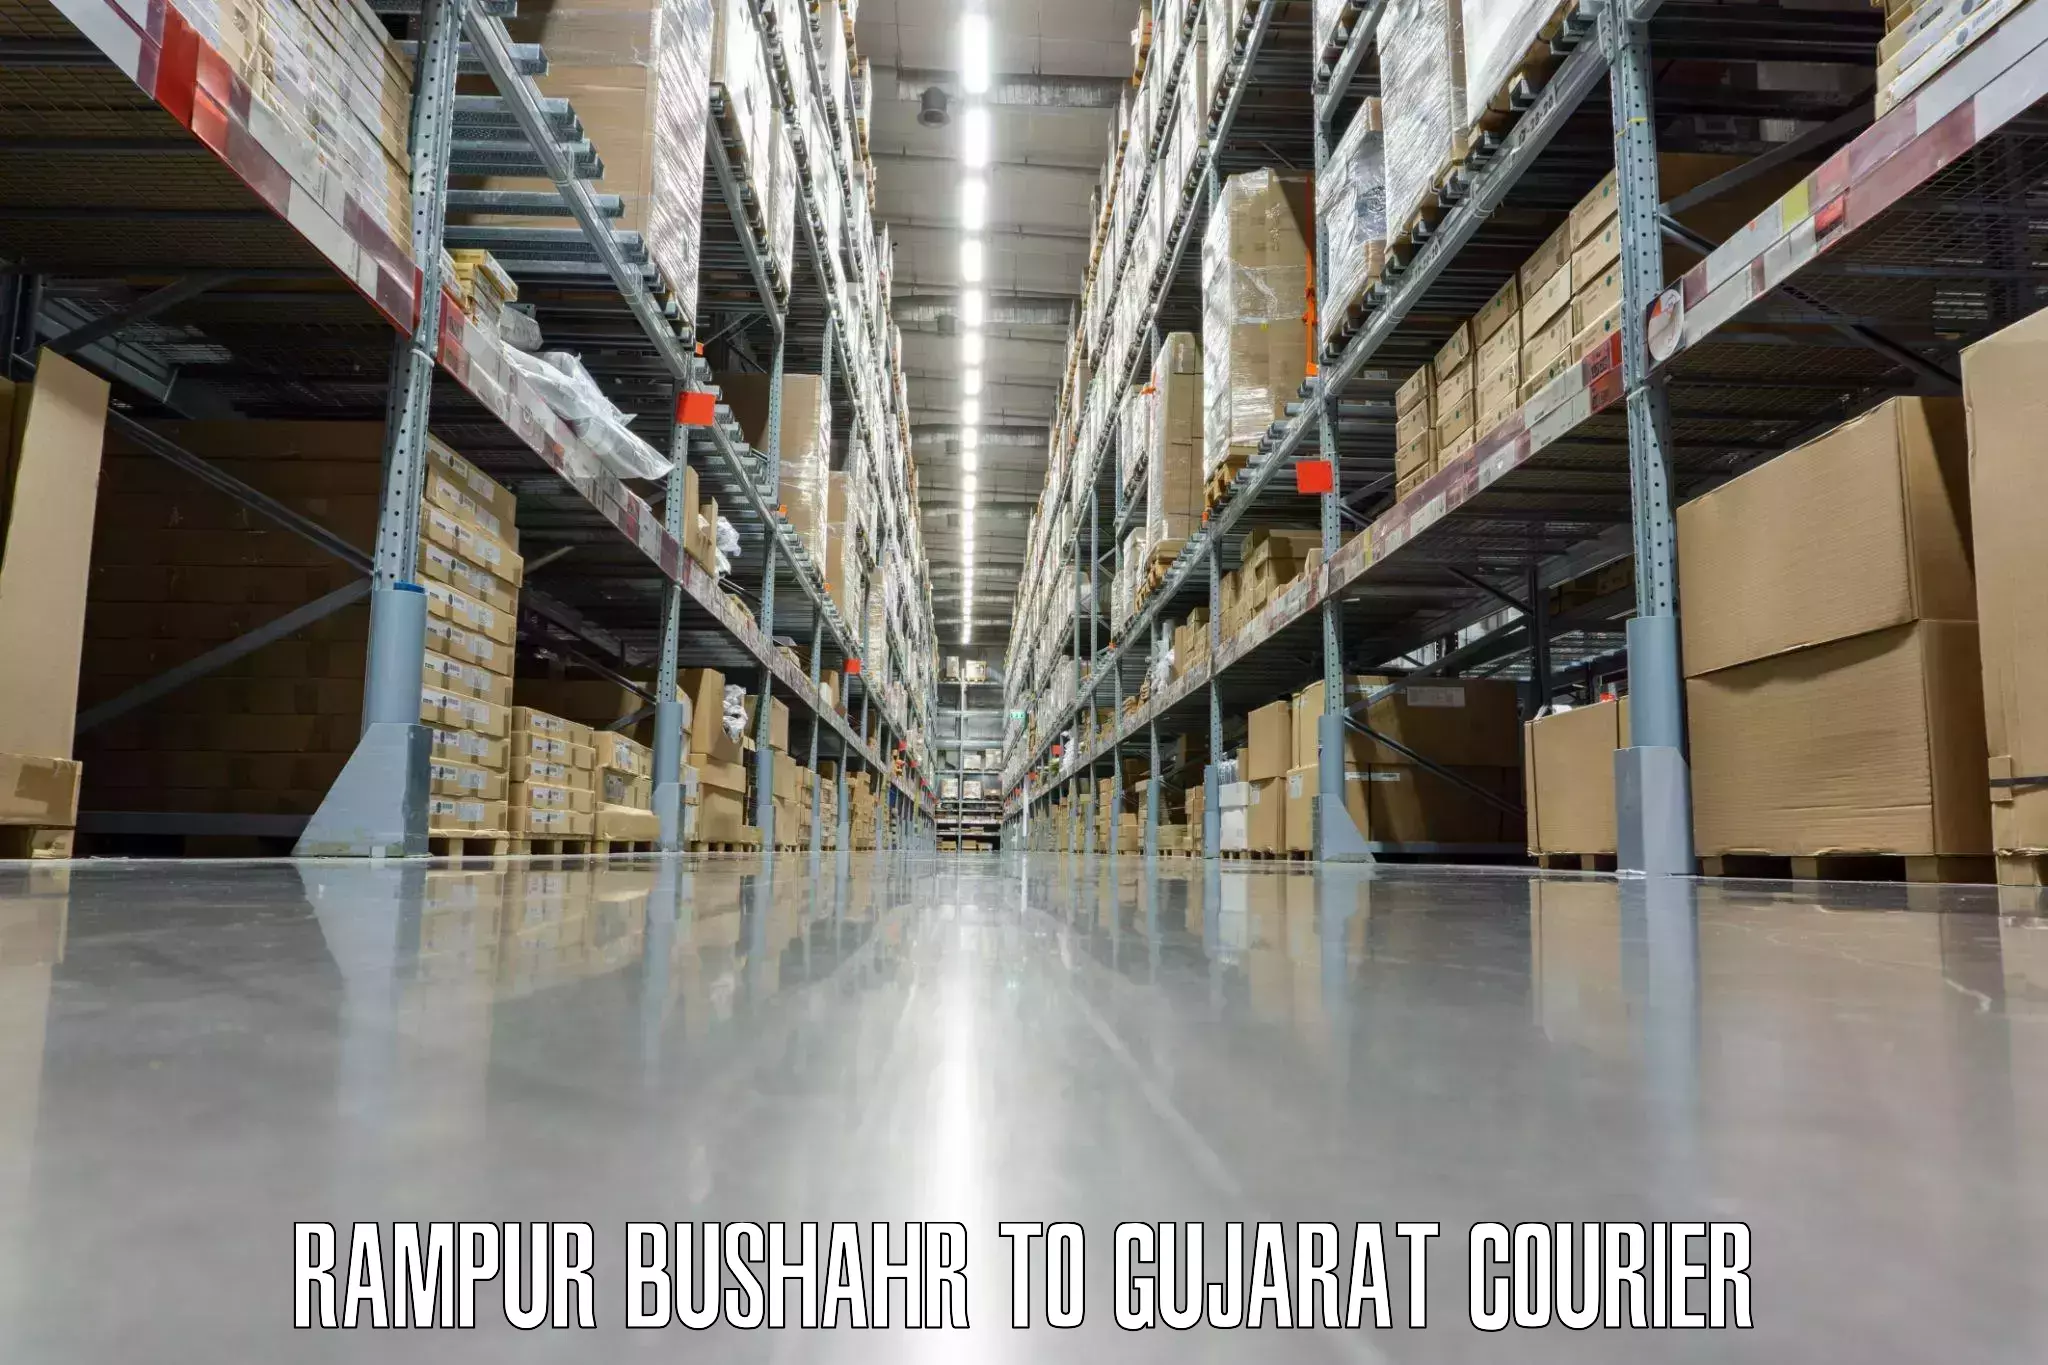 Baggage delivery estimate in Rampur Bushahr to Gujarat